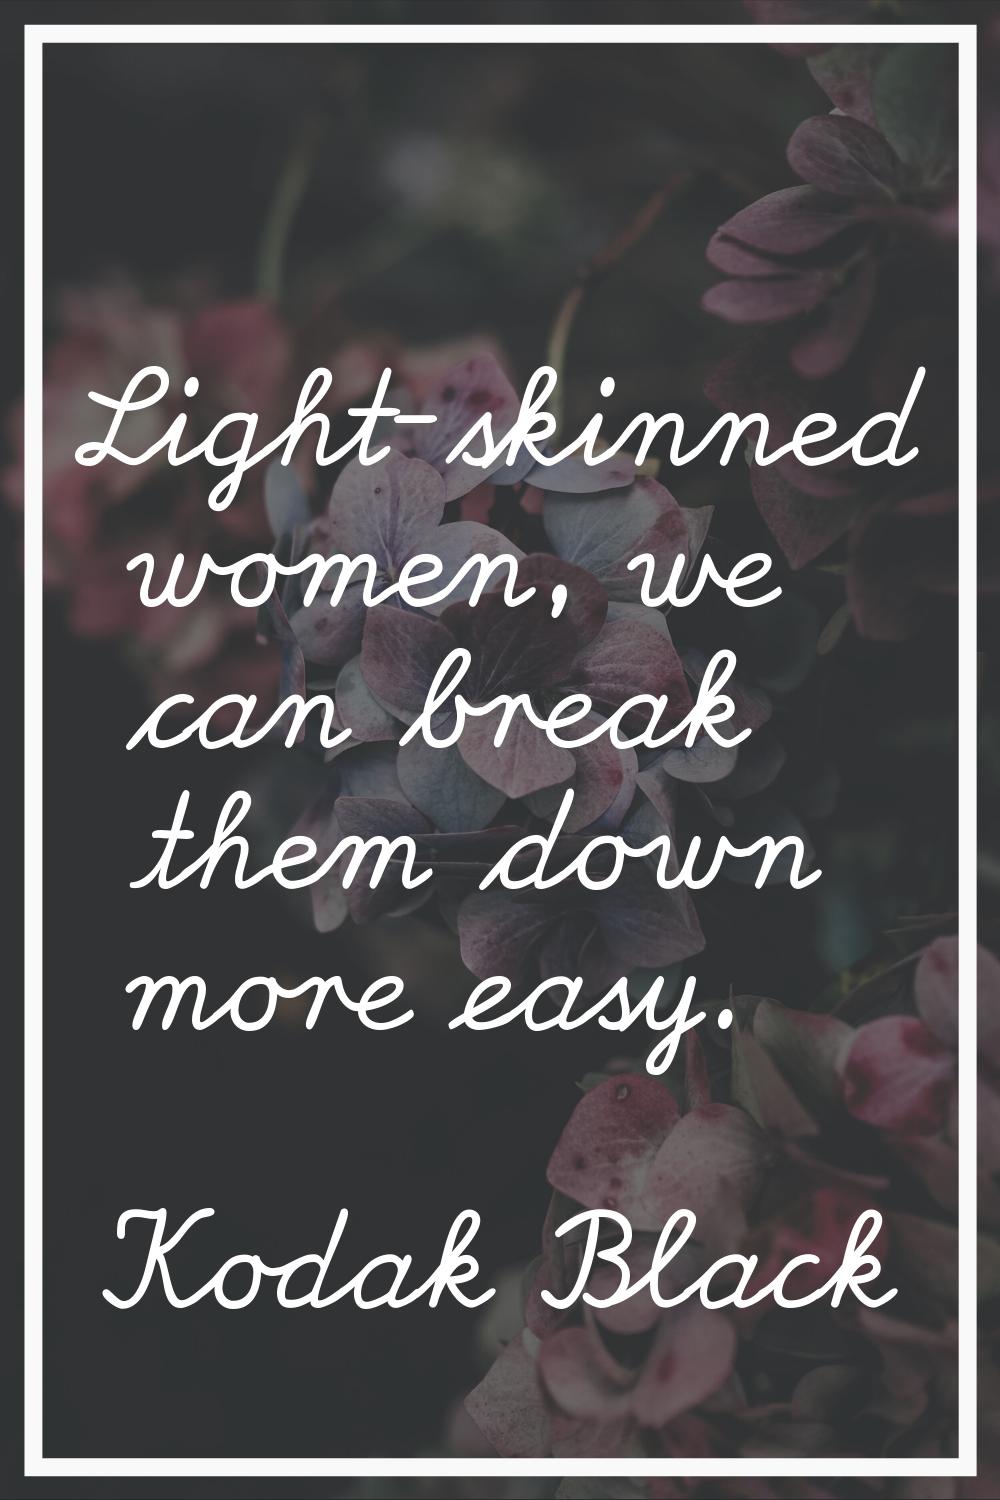 Light-skinned women, we can break them down more easy.